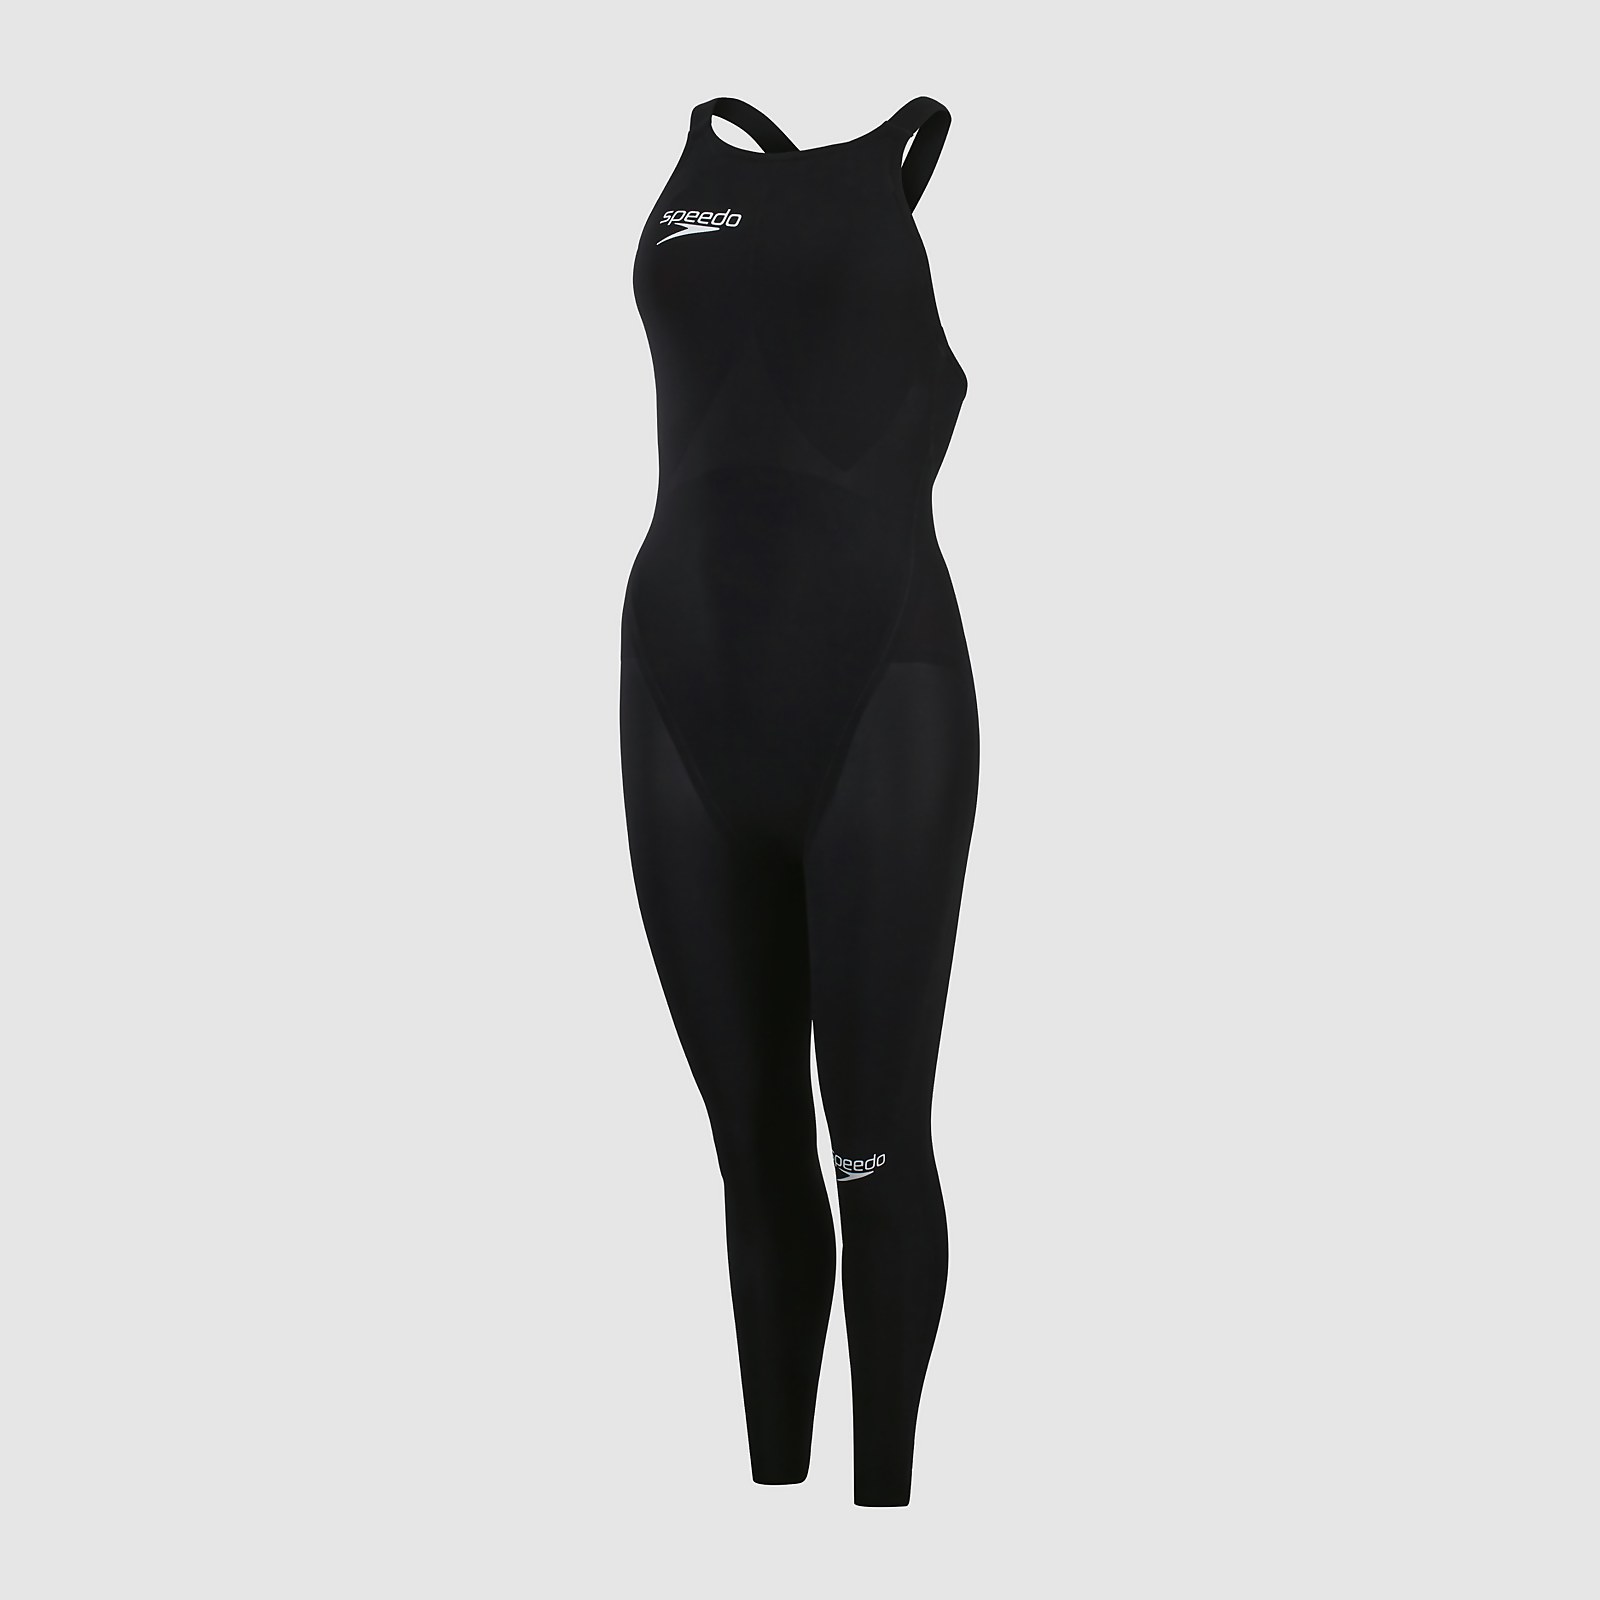 Fastskin LZR Elite Openwater 2.0 Bodyskin-Schwimmanzug mit geschlossenem Rücken für Damen Schwarz